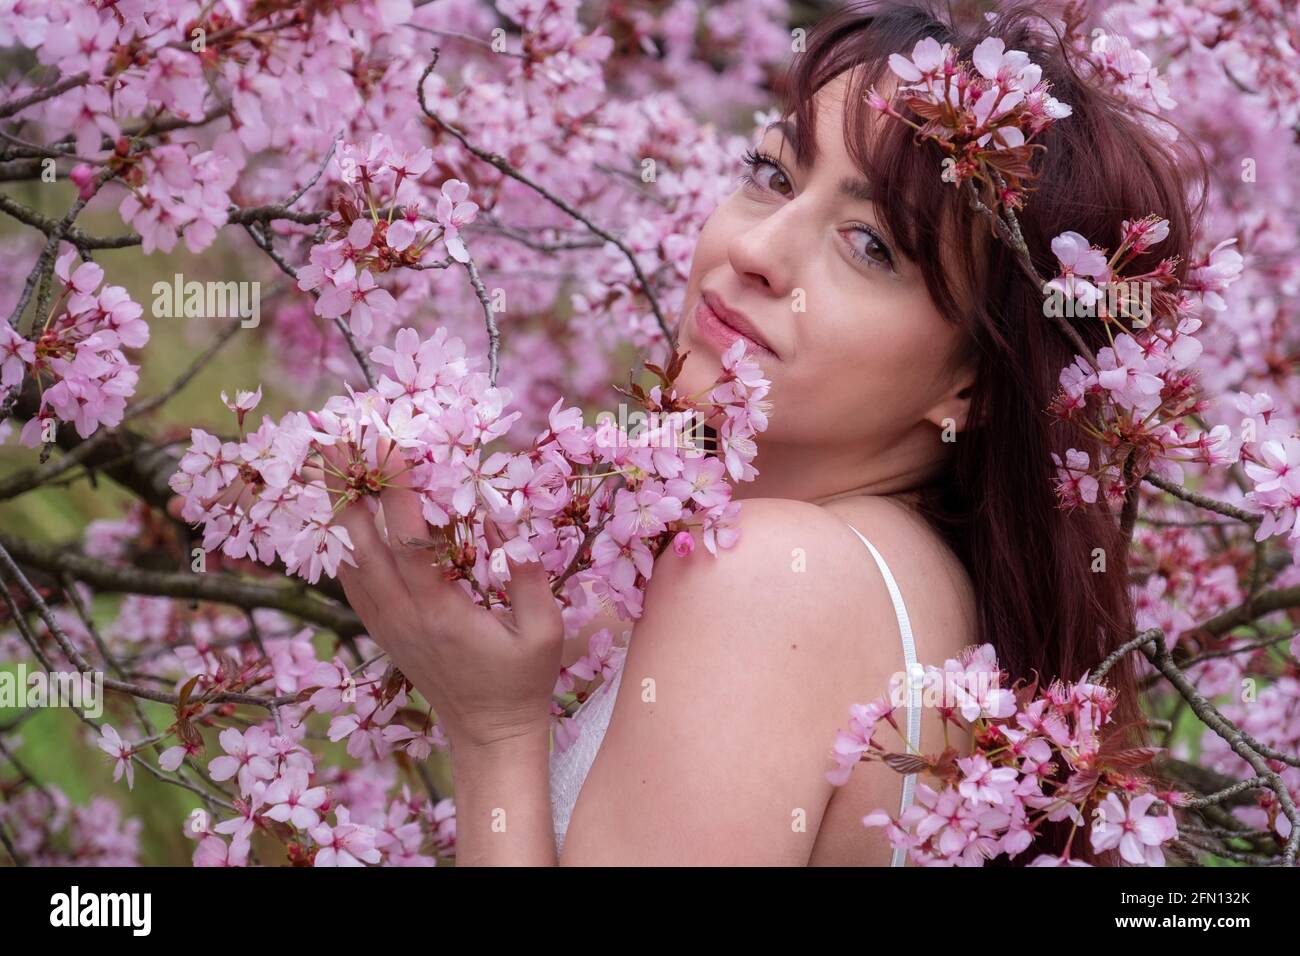 sensuale, seducente, ritratto di una donna bruna sexy, giovane, innocente, in abito bianco in fiore rosa di fiori d'albero nel risveglio primaverile di aprile, sakura, Foto Stock